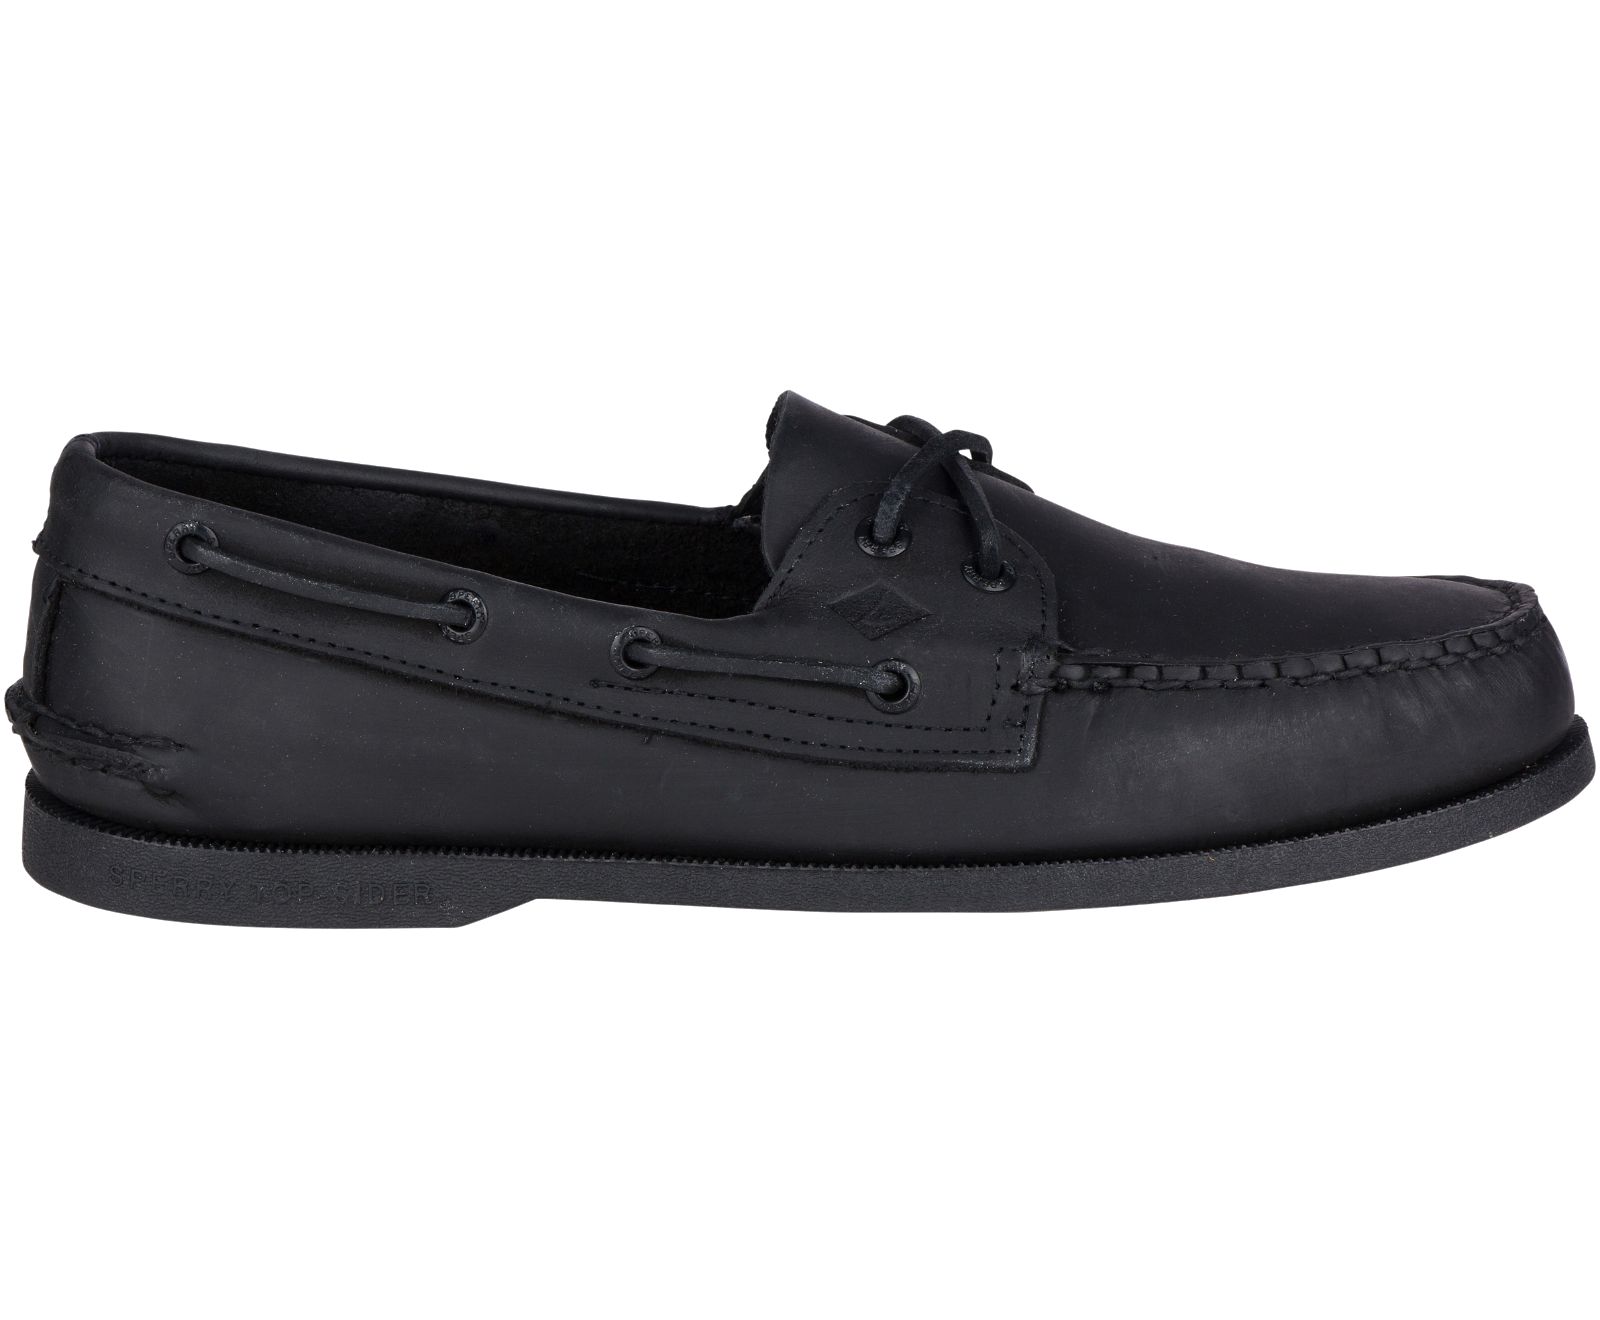 Men's Authentic Original Leather Boat Shoe - Black [sperry shoes 0139 ...